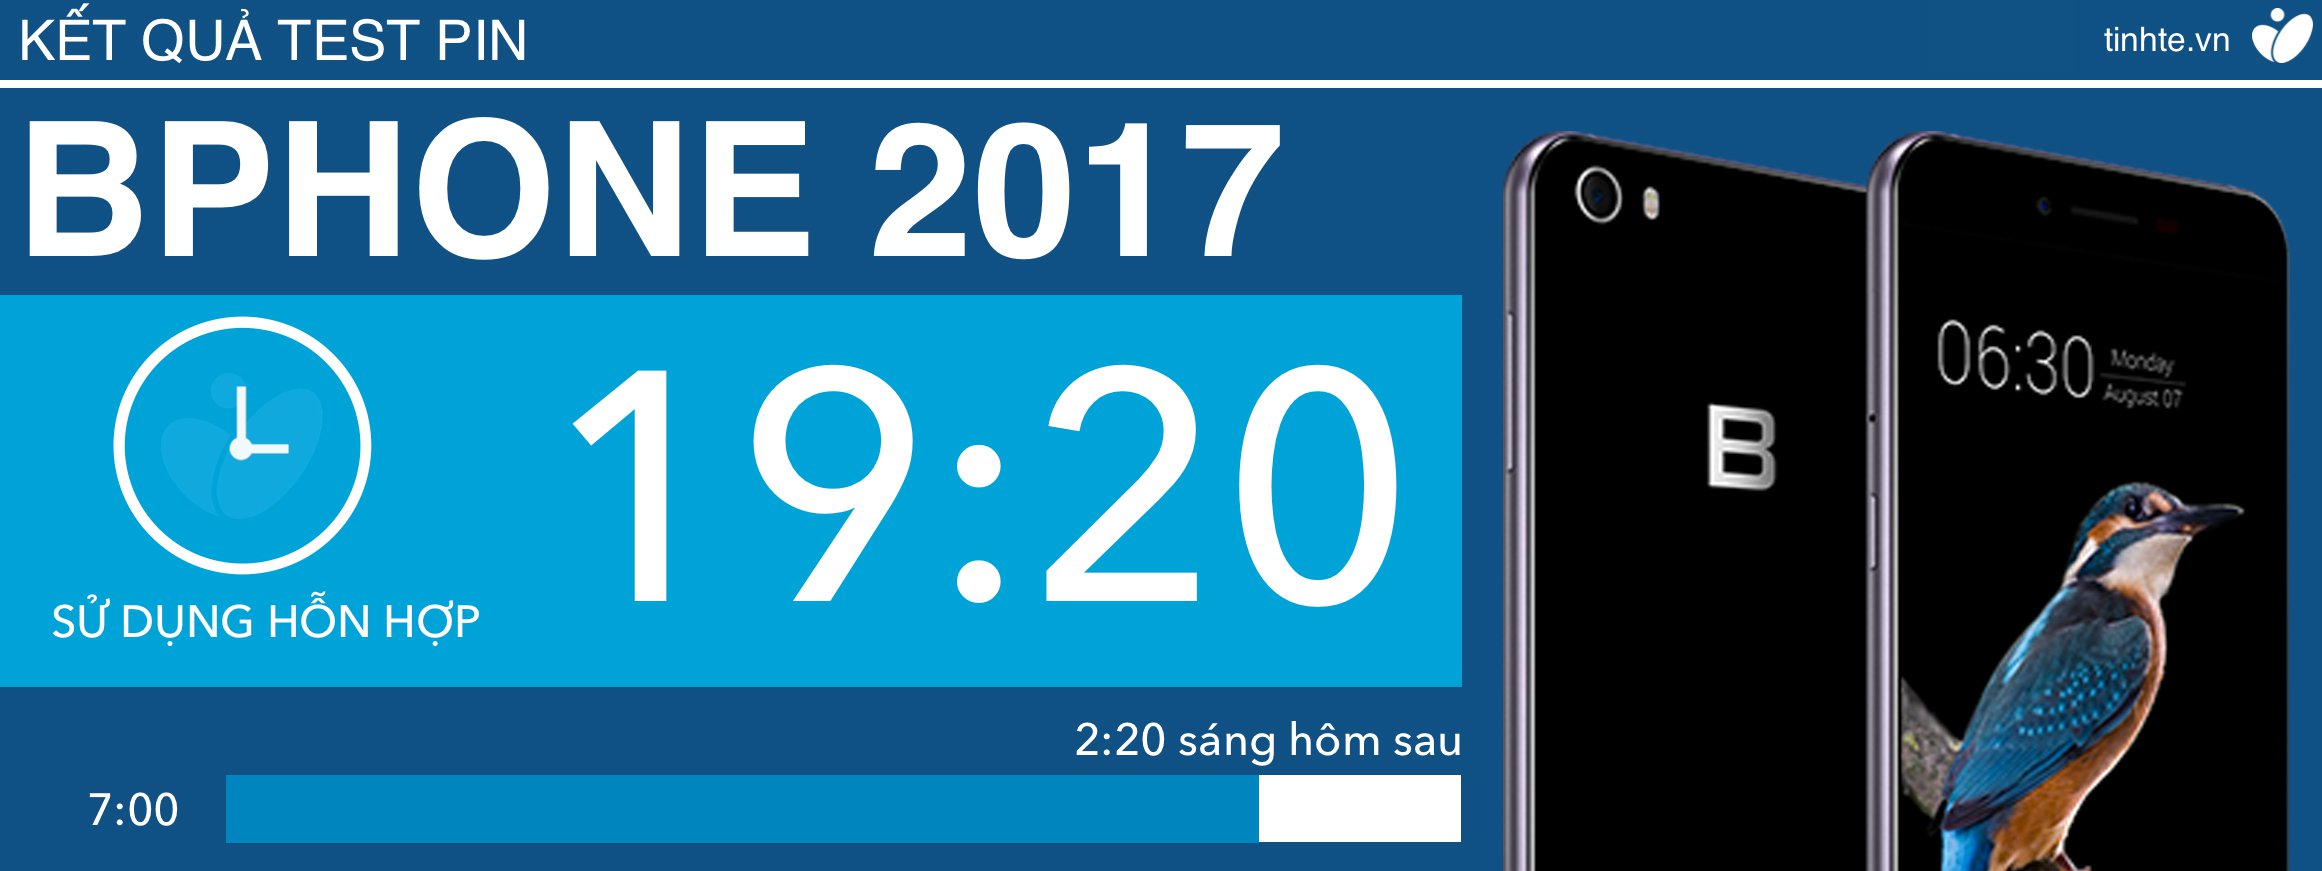 Thử nghiệm thời lượng pin Bphone 2017: sử dụng hỗn hợp hơn 19 tiếng, sạc rất nhanh [HOT]